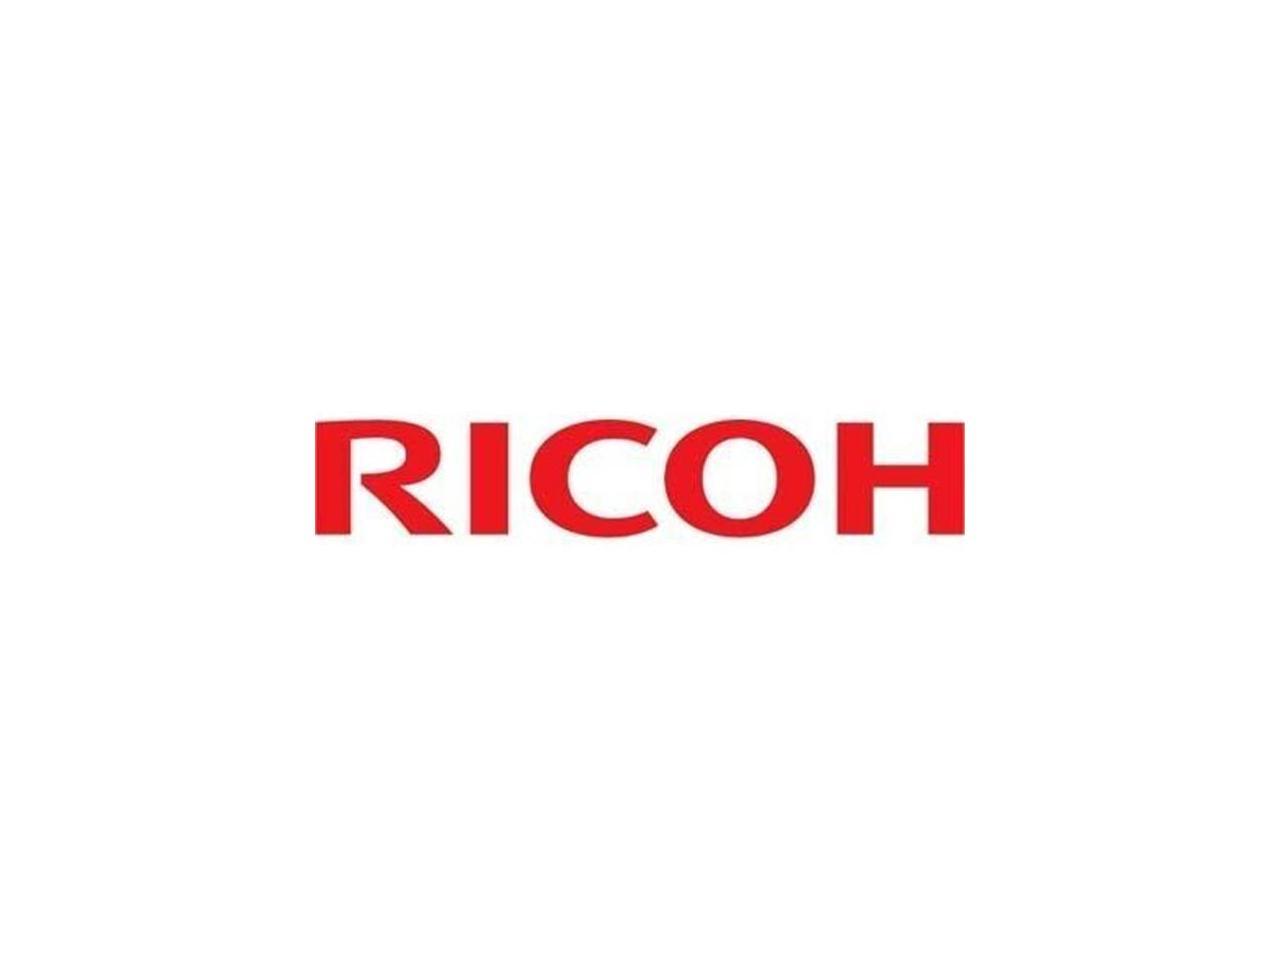 Ricoh SR760 SR770 SR790 (Type K) Staple Cartridge Refill (3 410802